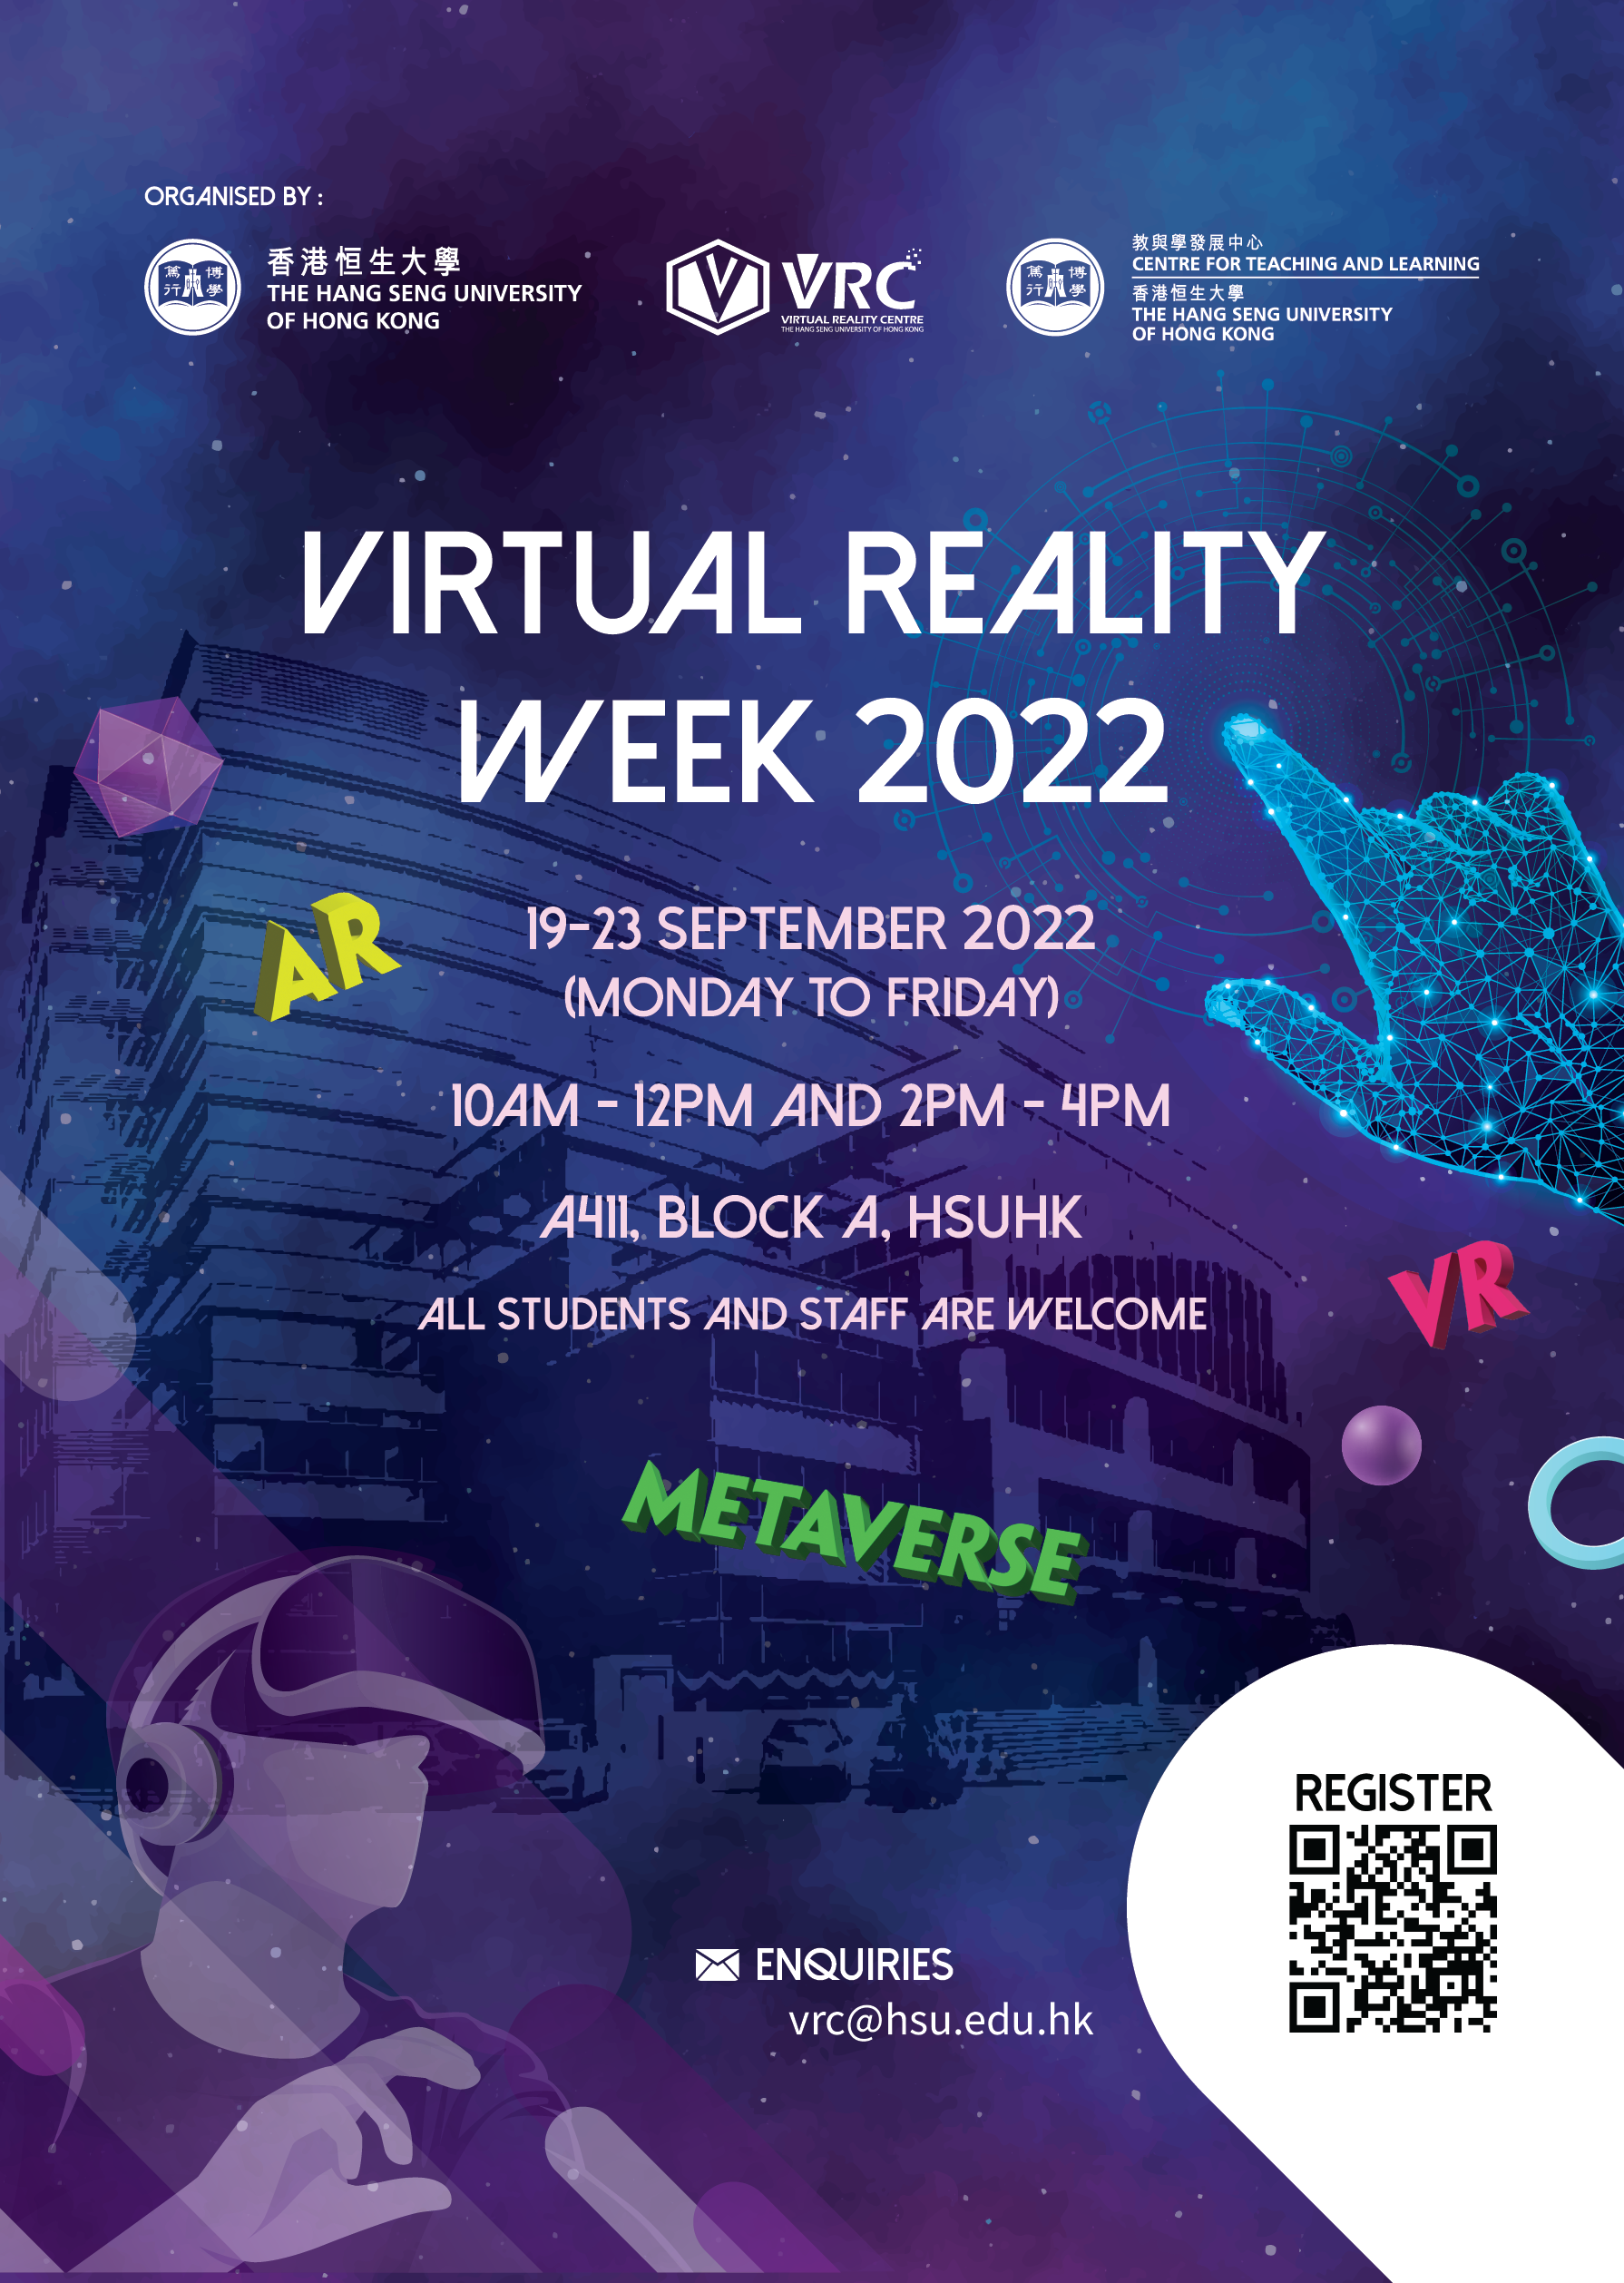 VR Week 2022